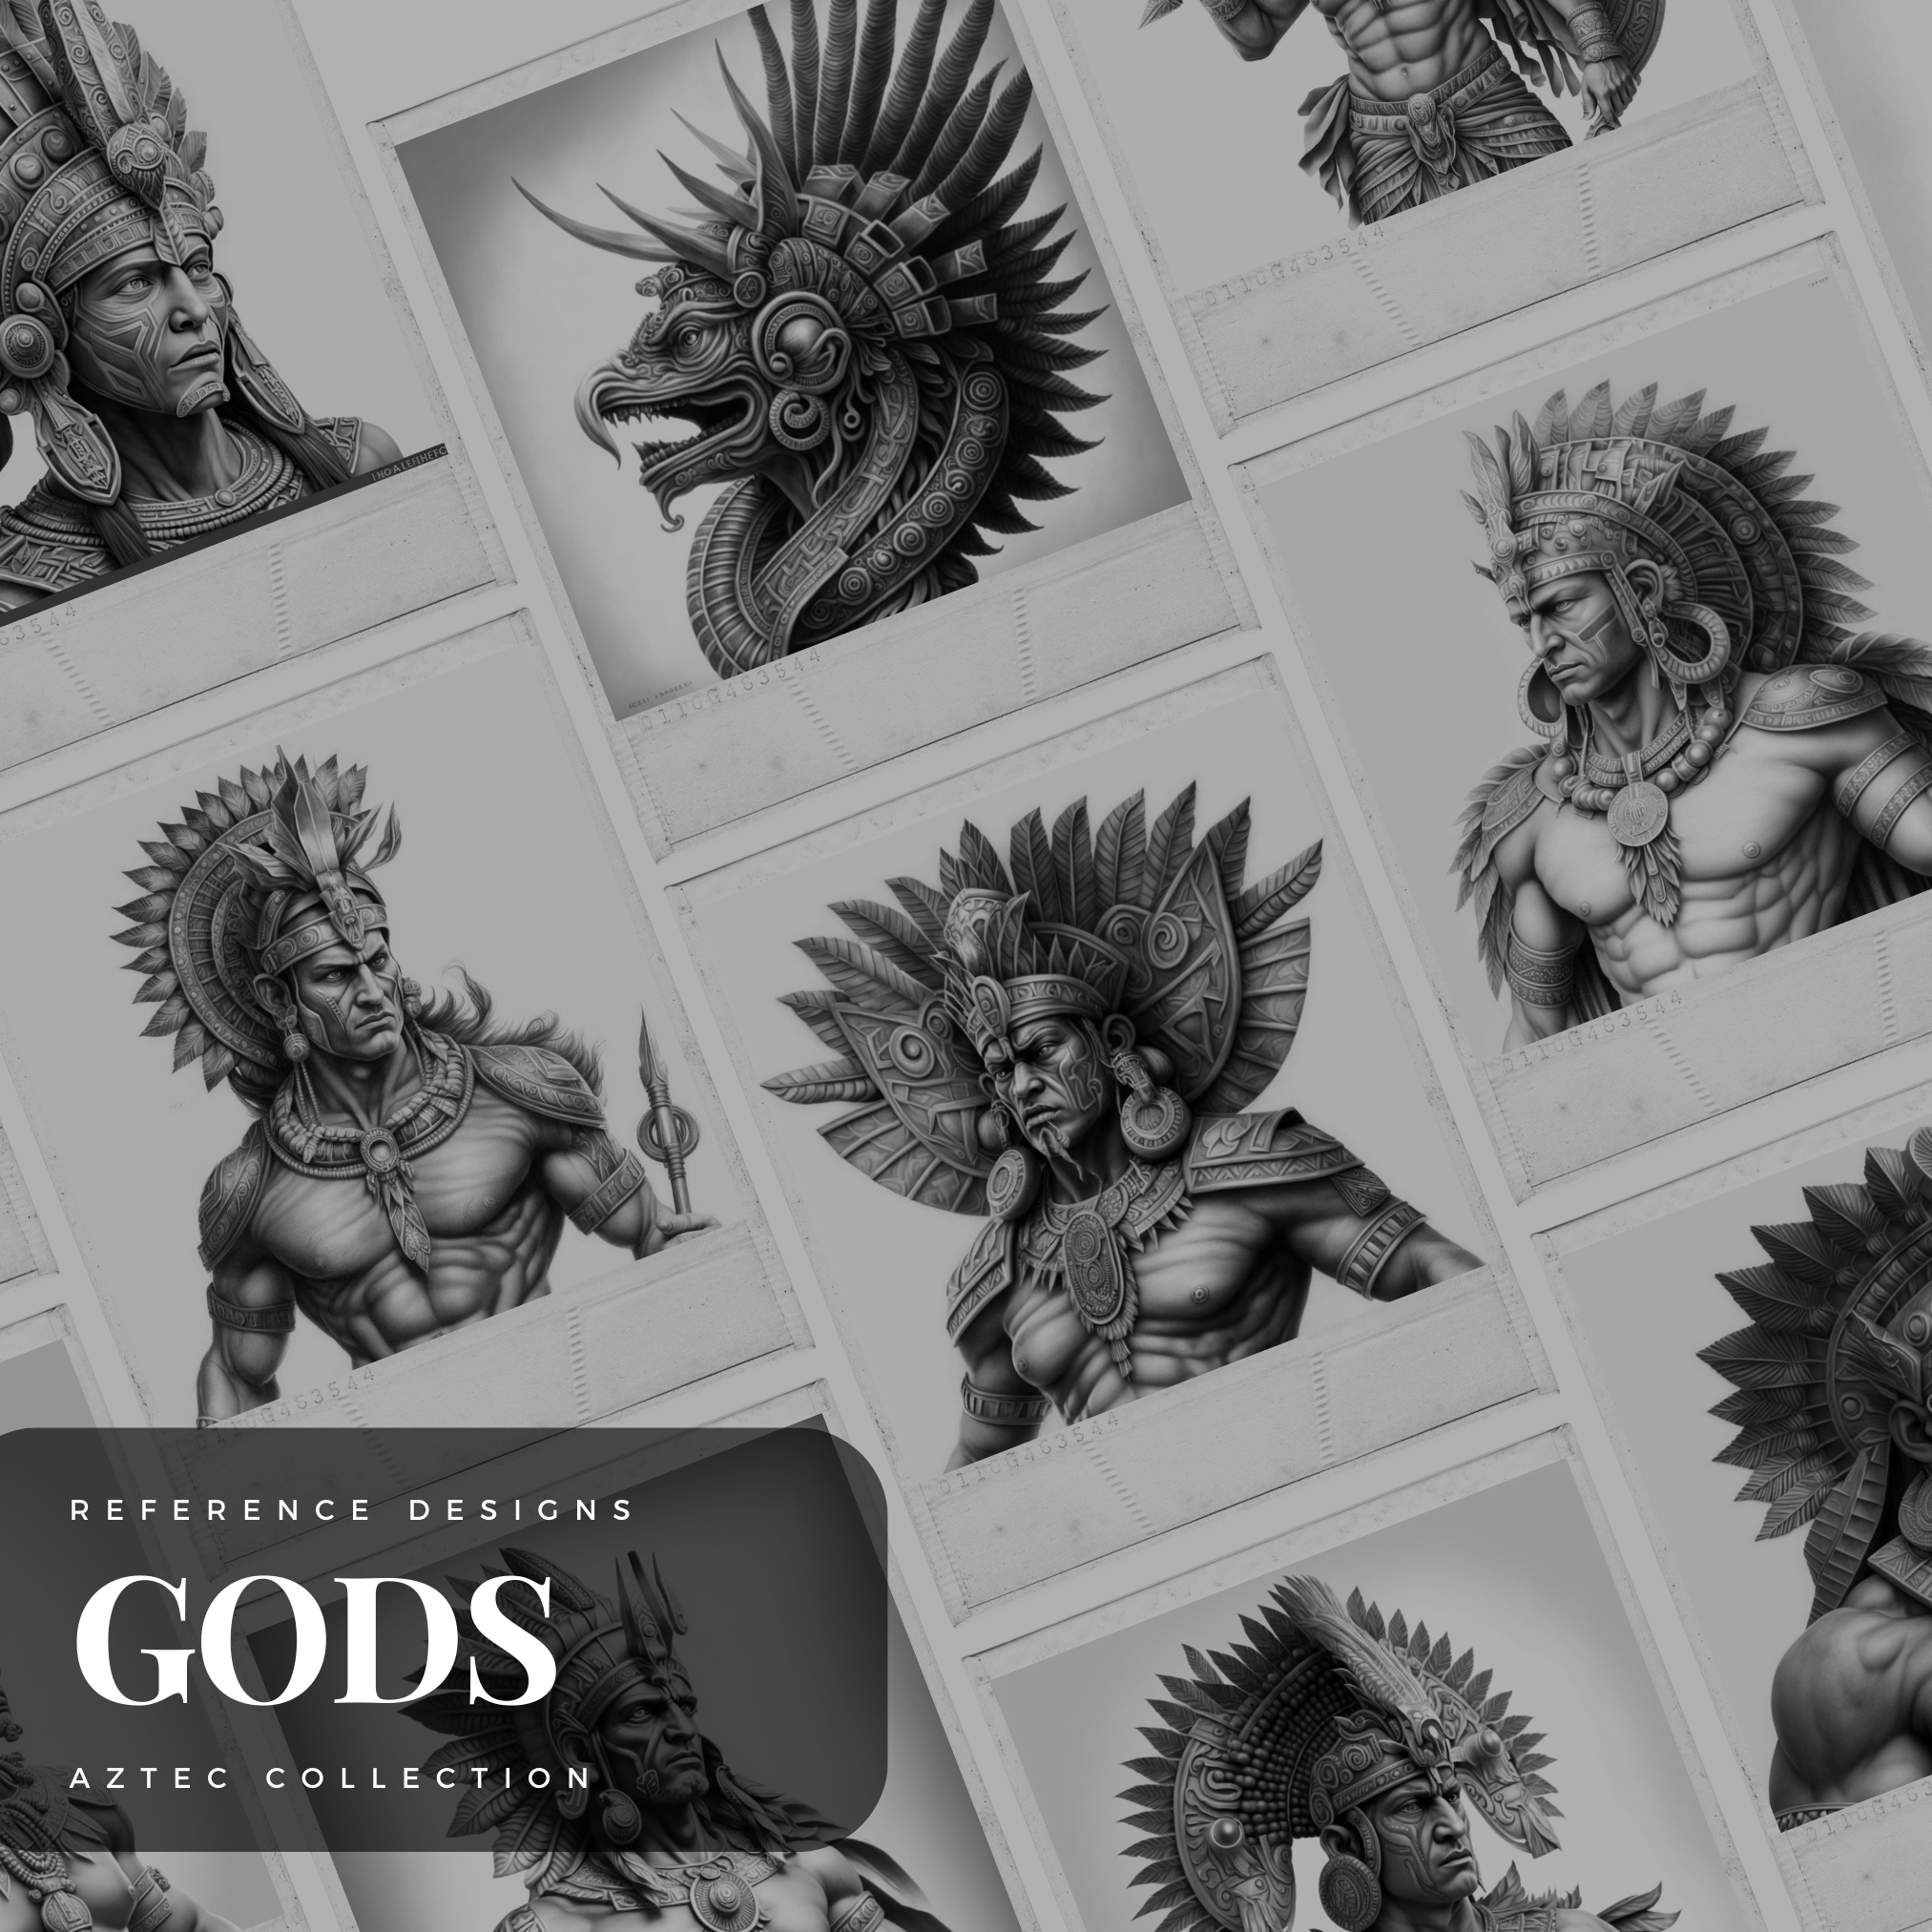 Aztec Gods Digital Design Collection: 50 Procreate & Sketchbook Images